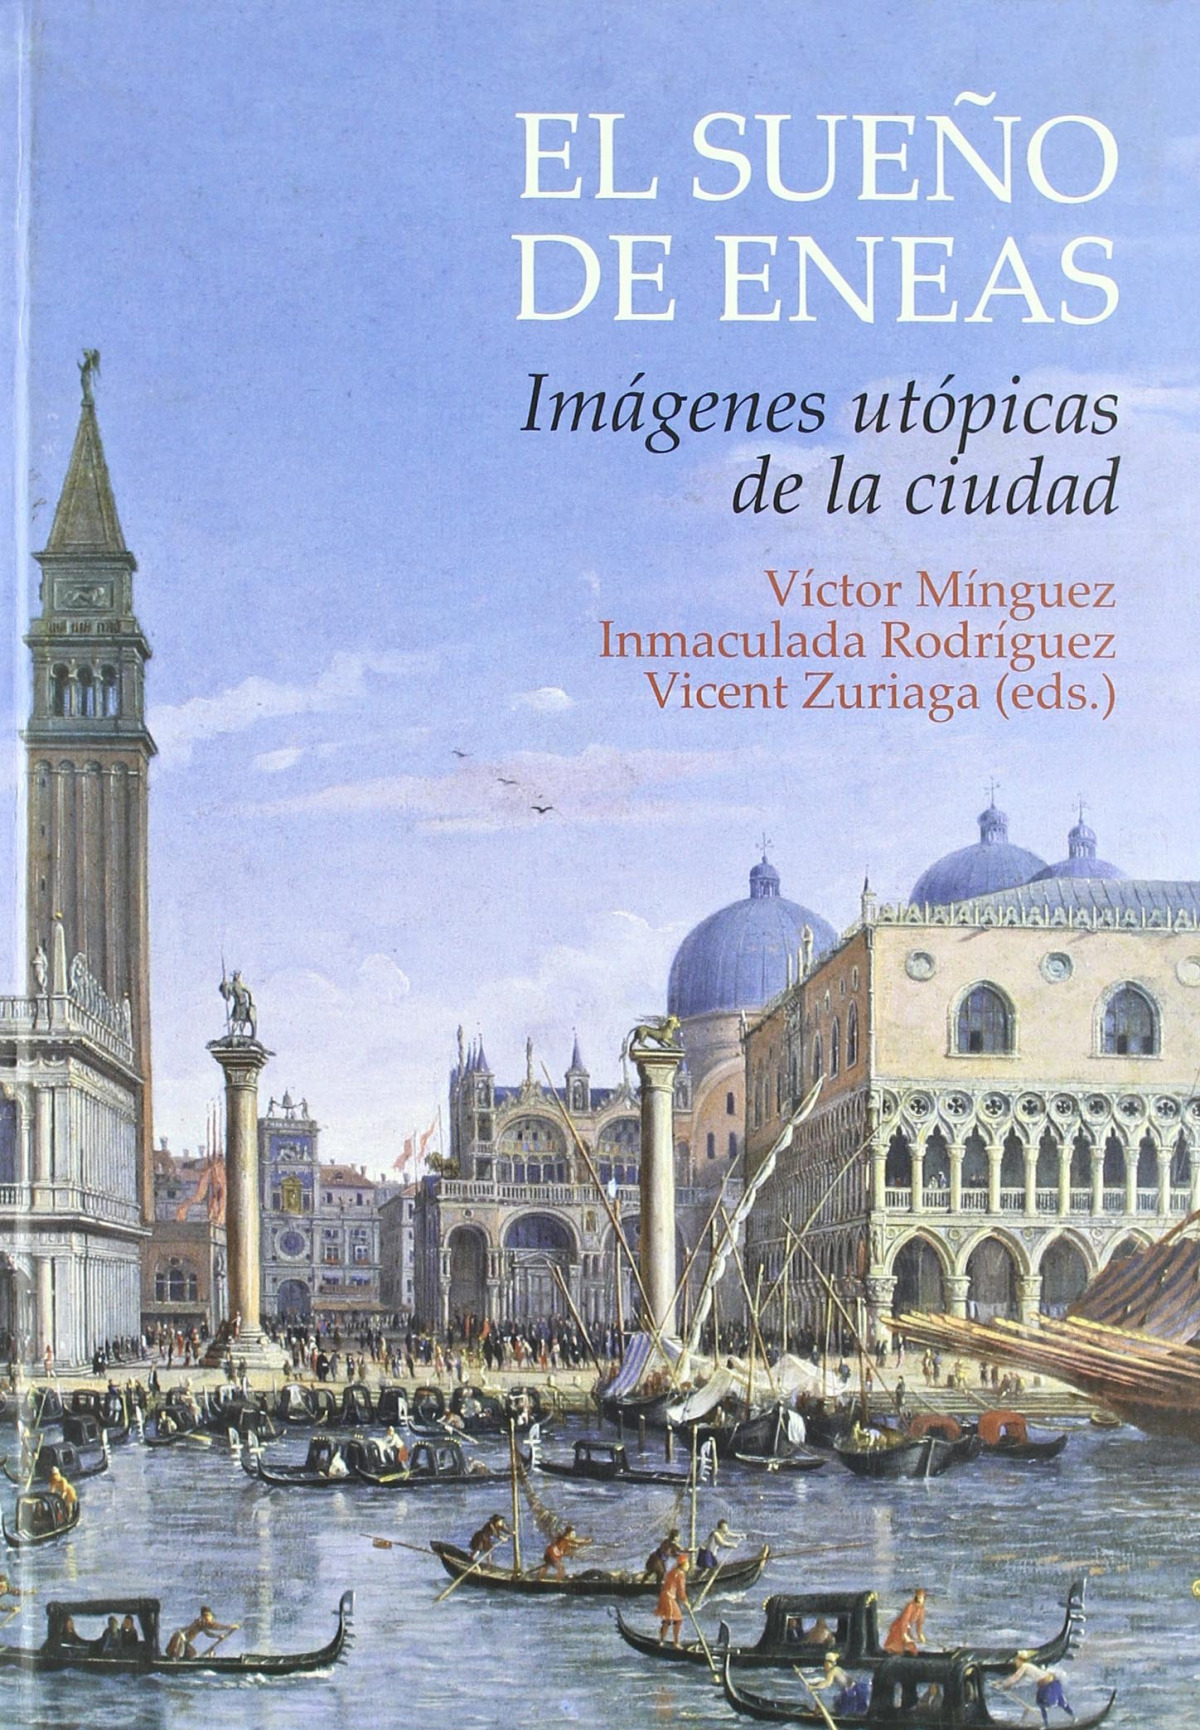 SueÑo de eneas. imagenes utopicas de la ciudad - Victor Minguez (eds.)